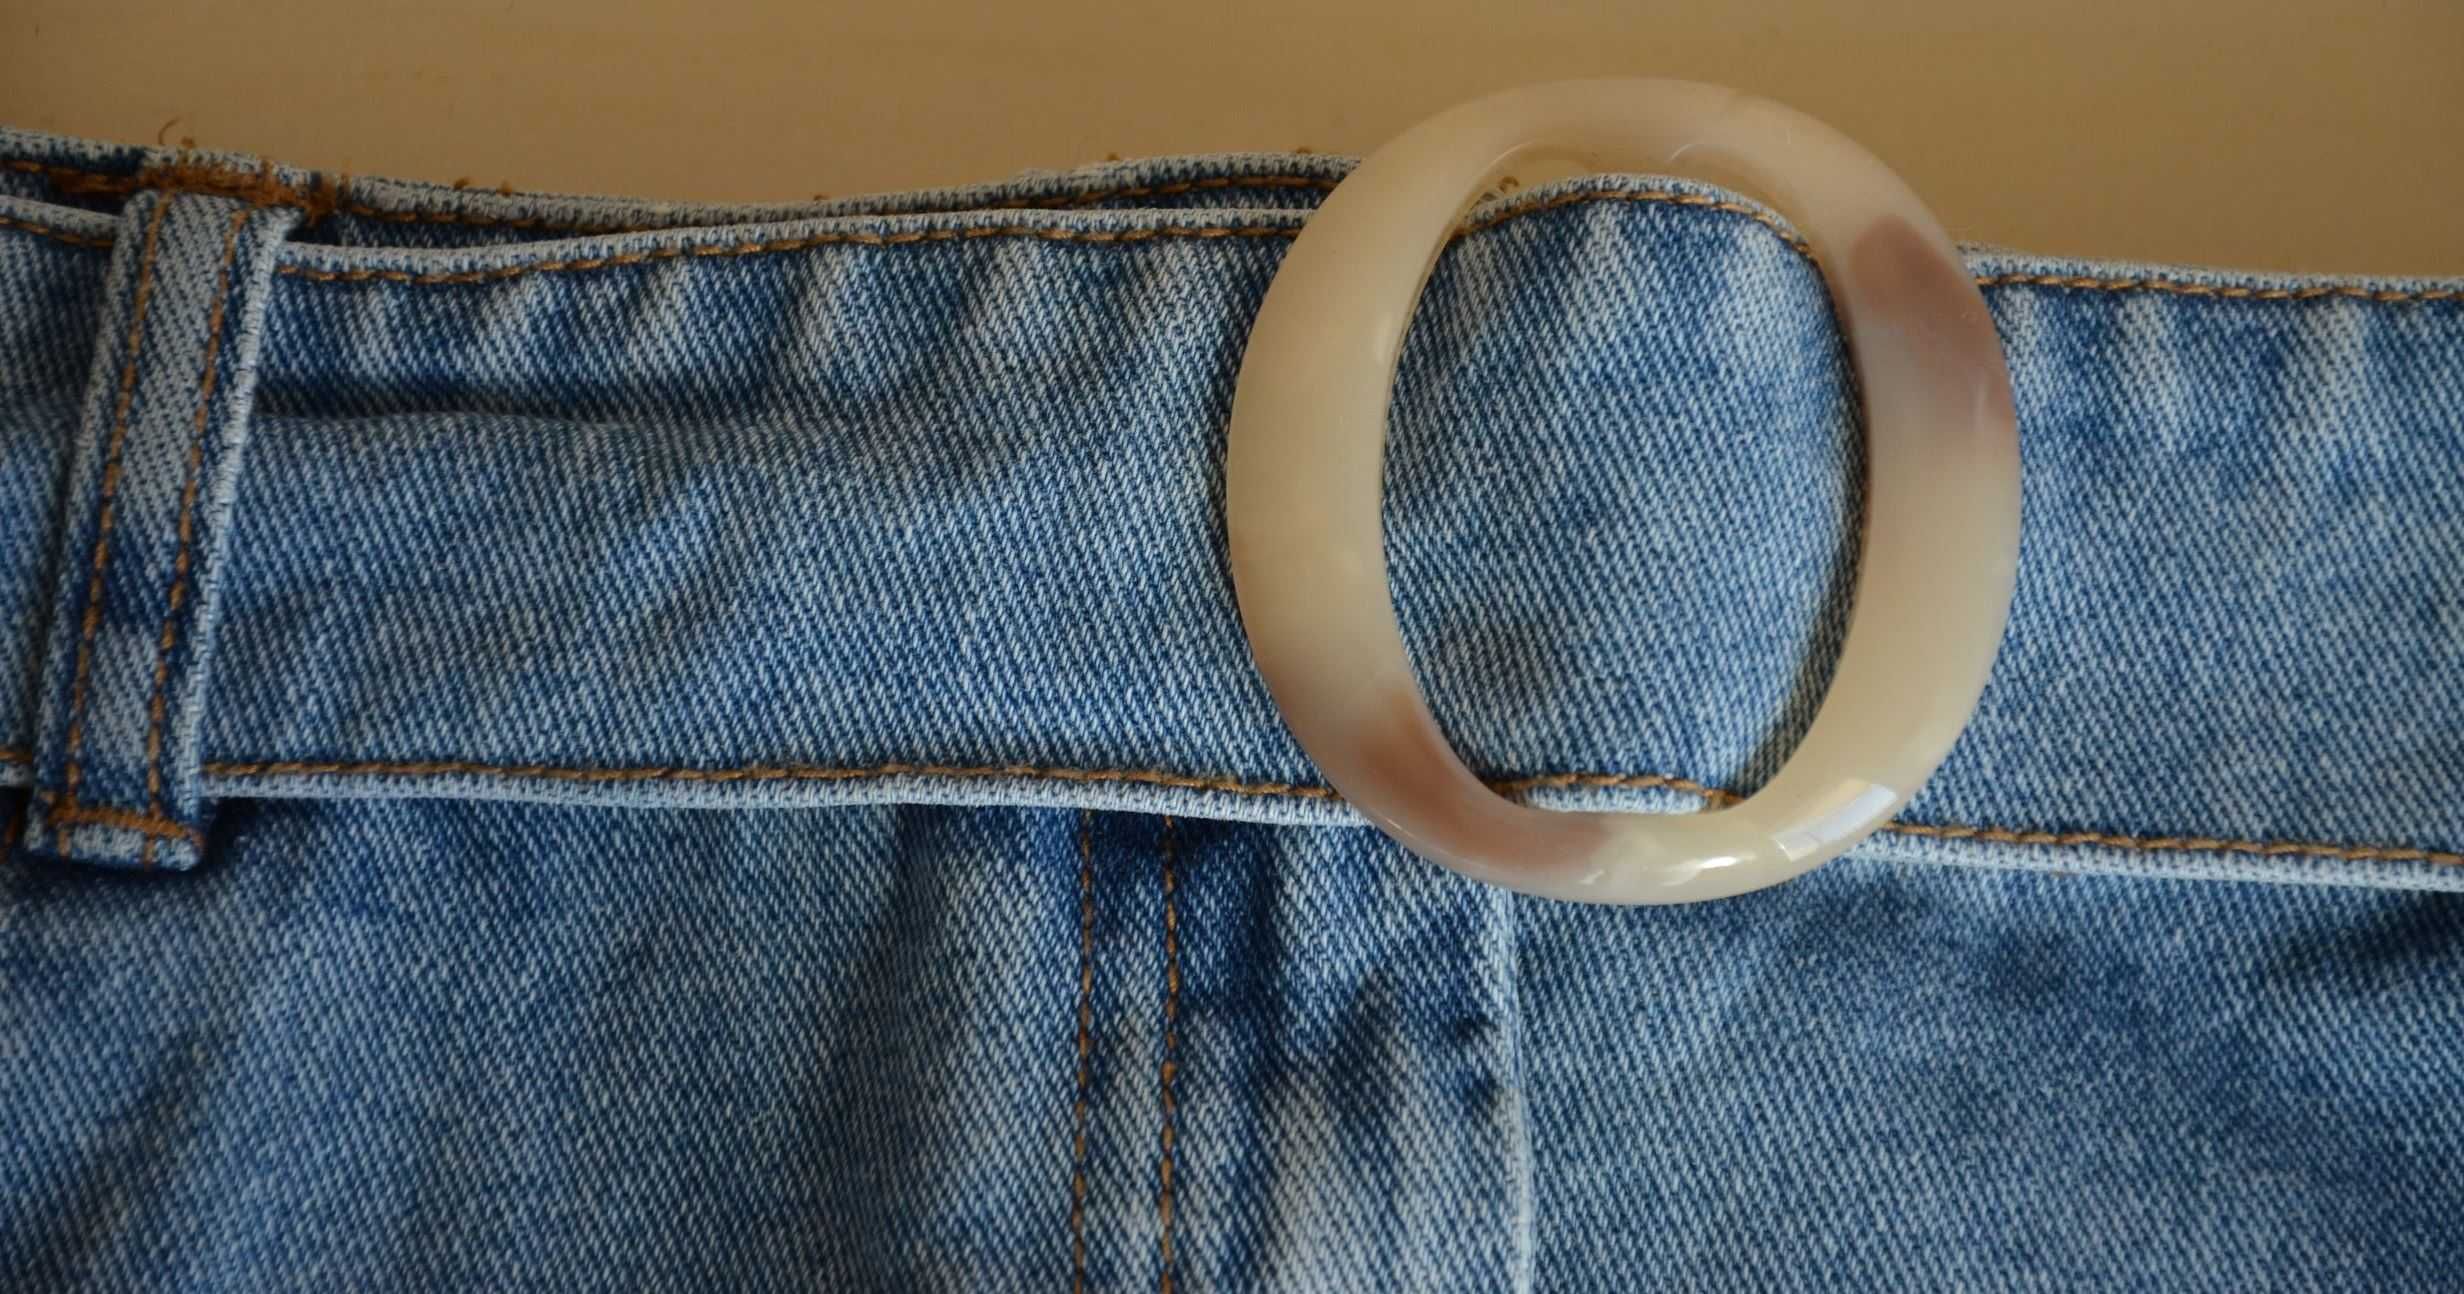 Spódnica krótka mini jeansowa niebieska z paskiem klamra vintage retro